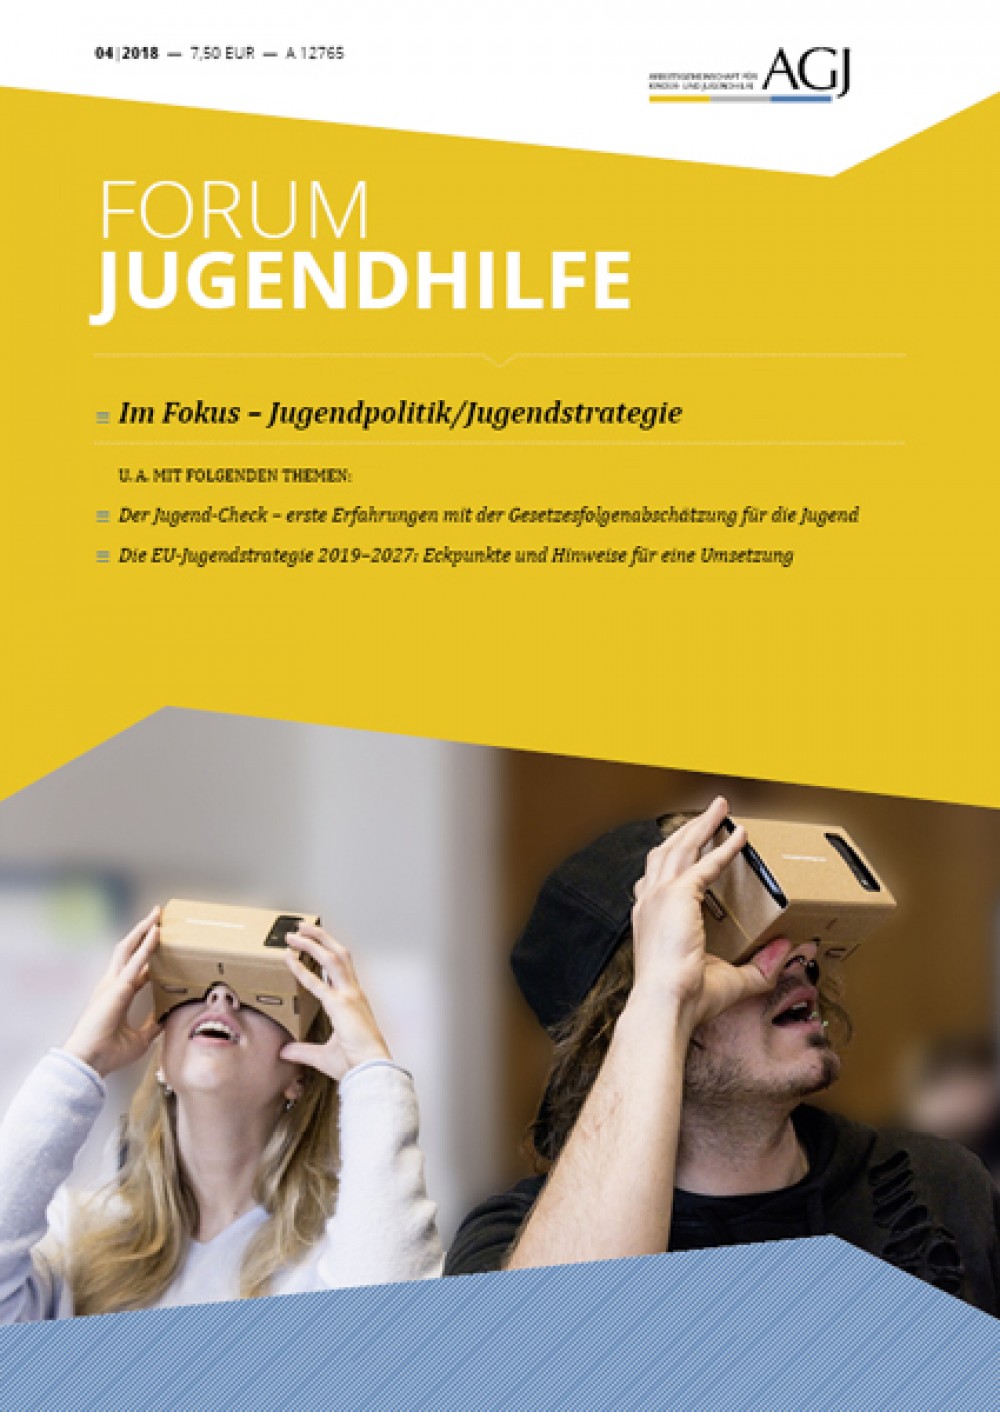 Bild der Publikation Forum Jugendhilfe, eine Frau und ein Mann schauen durch zwei virtuelle Brillen.